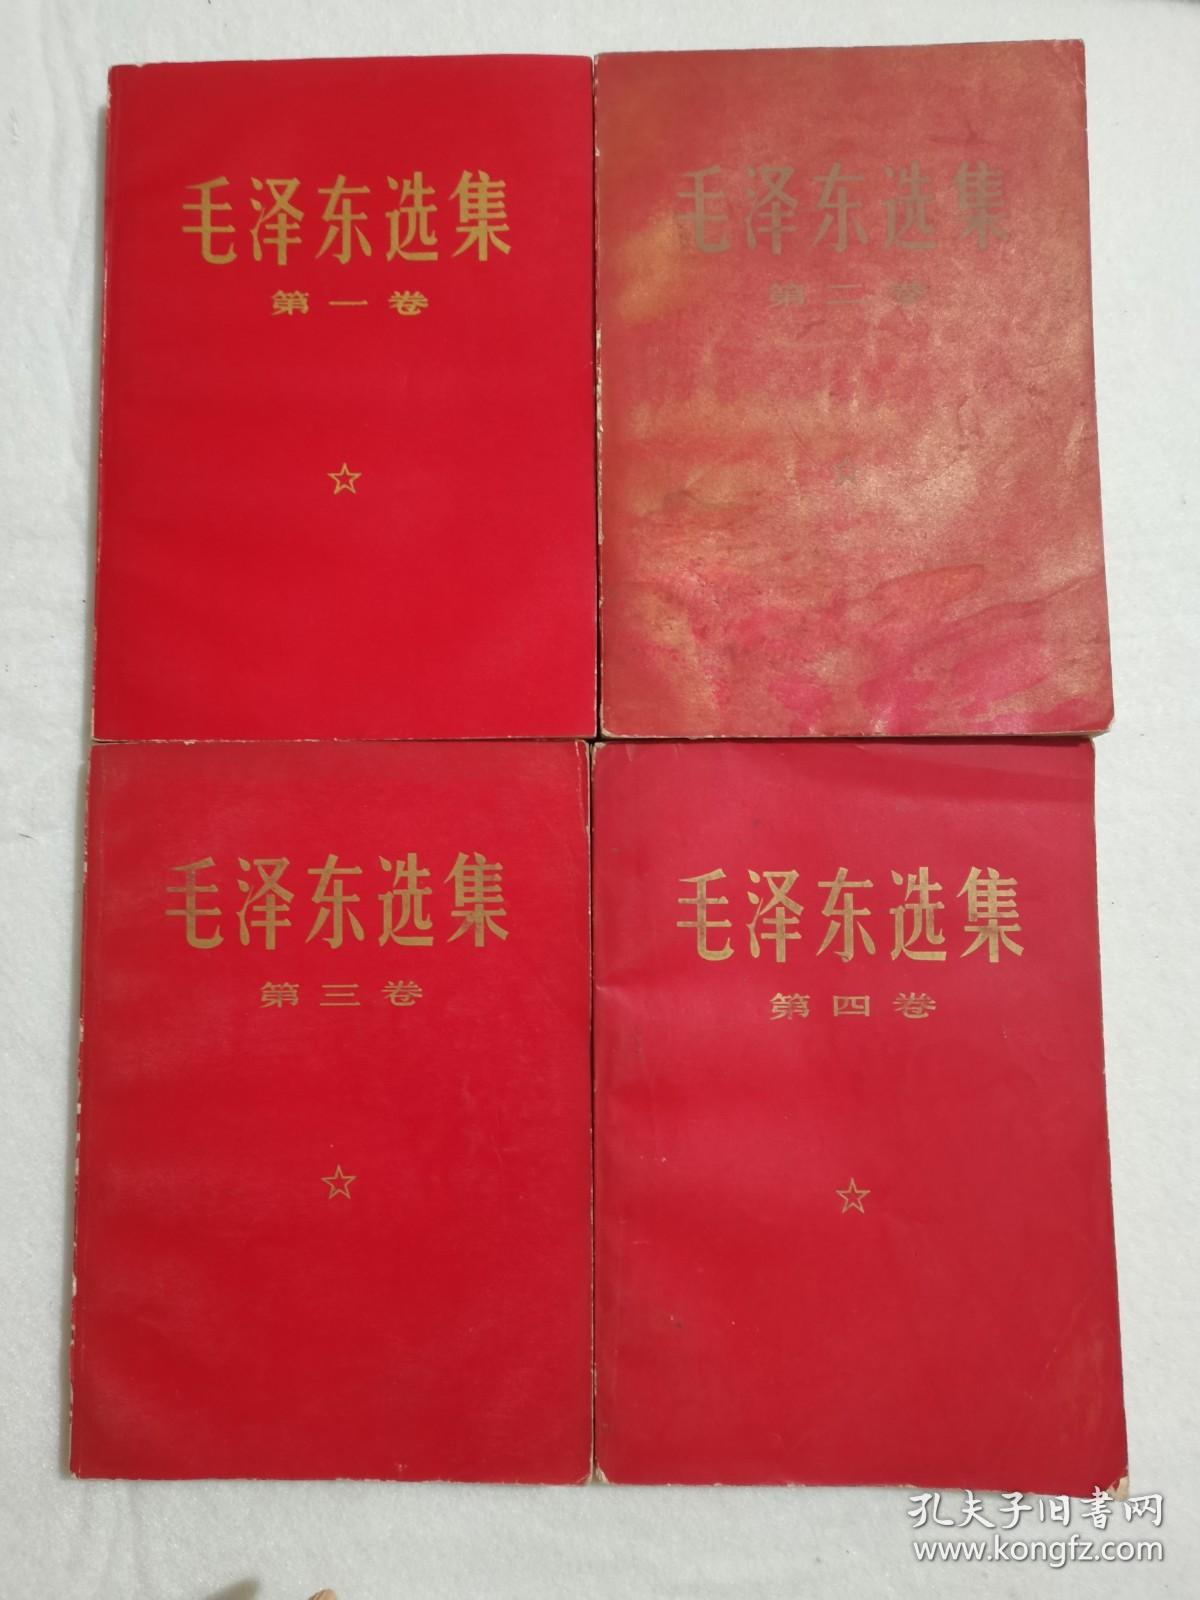 毛泽东选集 红皮1-4卷 全 1968年 北京 浙江印